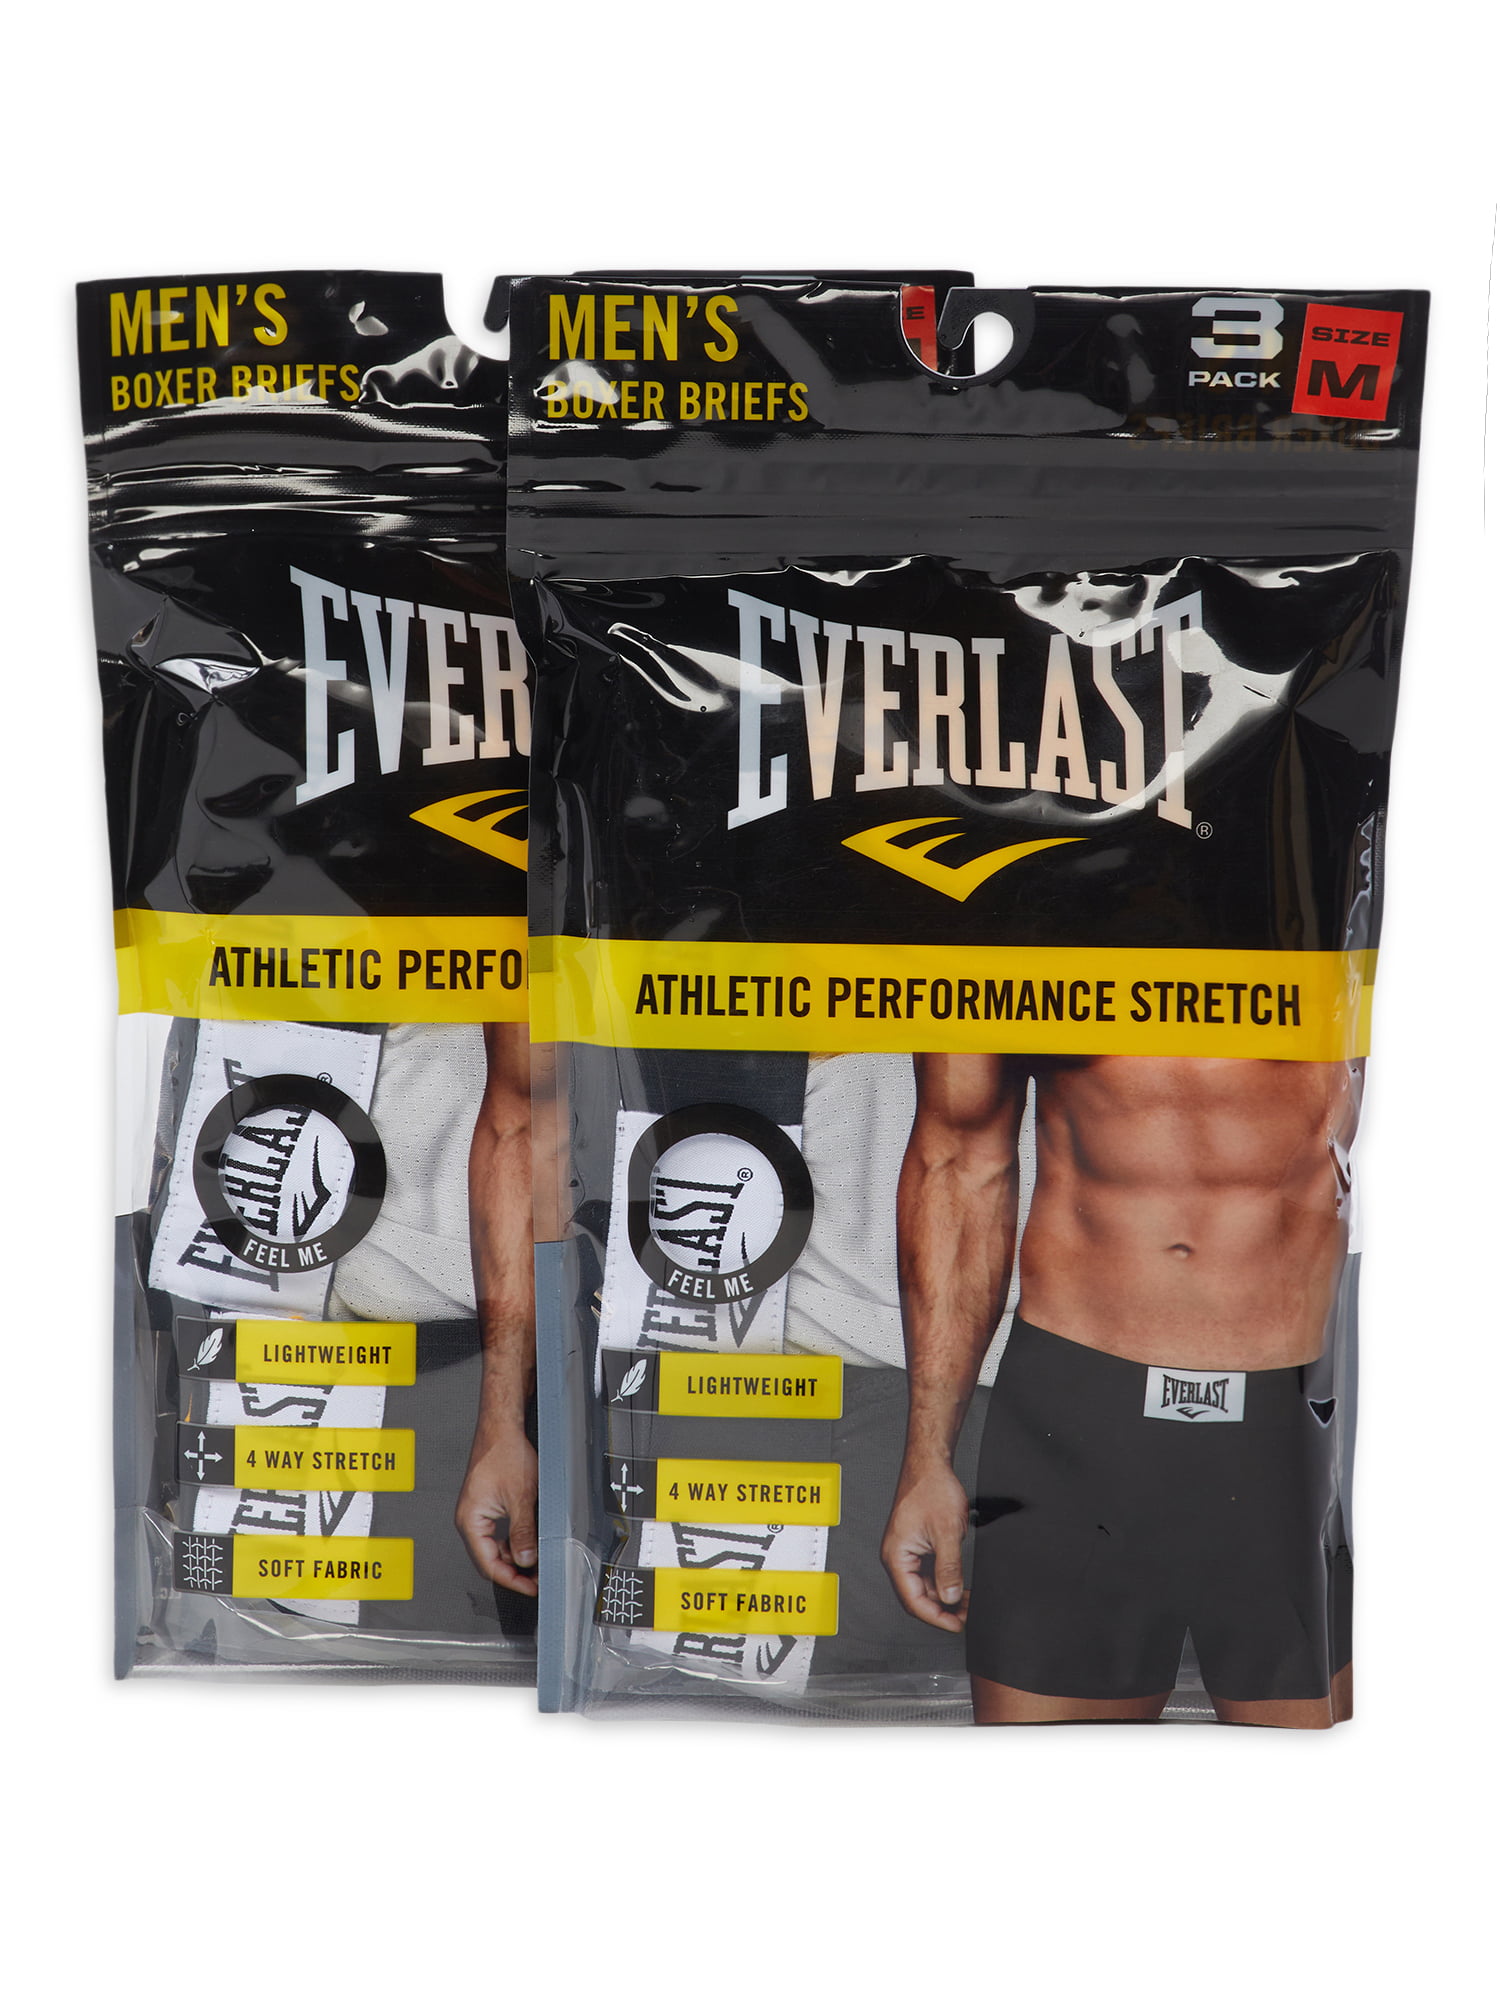 Voorouder Bijwonen Ongrijpbaar Everlast Men's Boxer Briefs, 6-Pack - Walmart.com